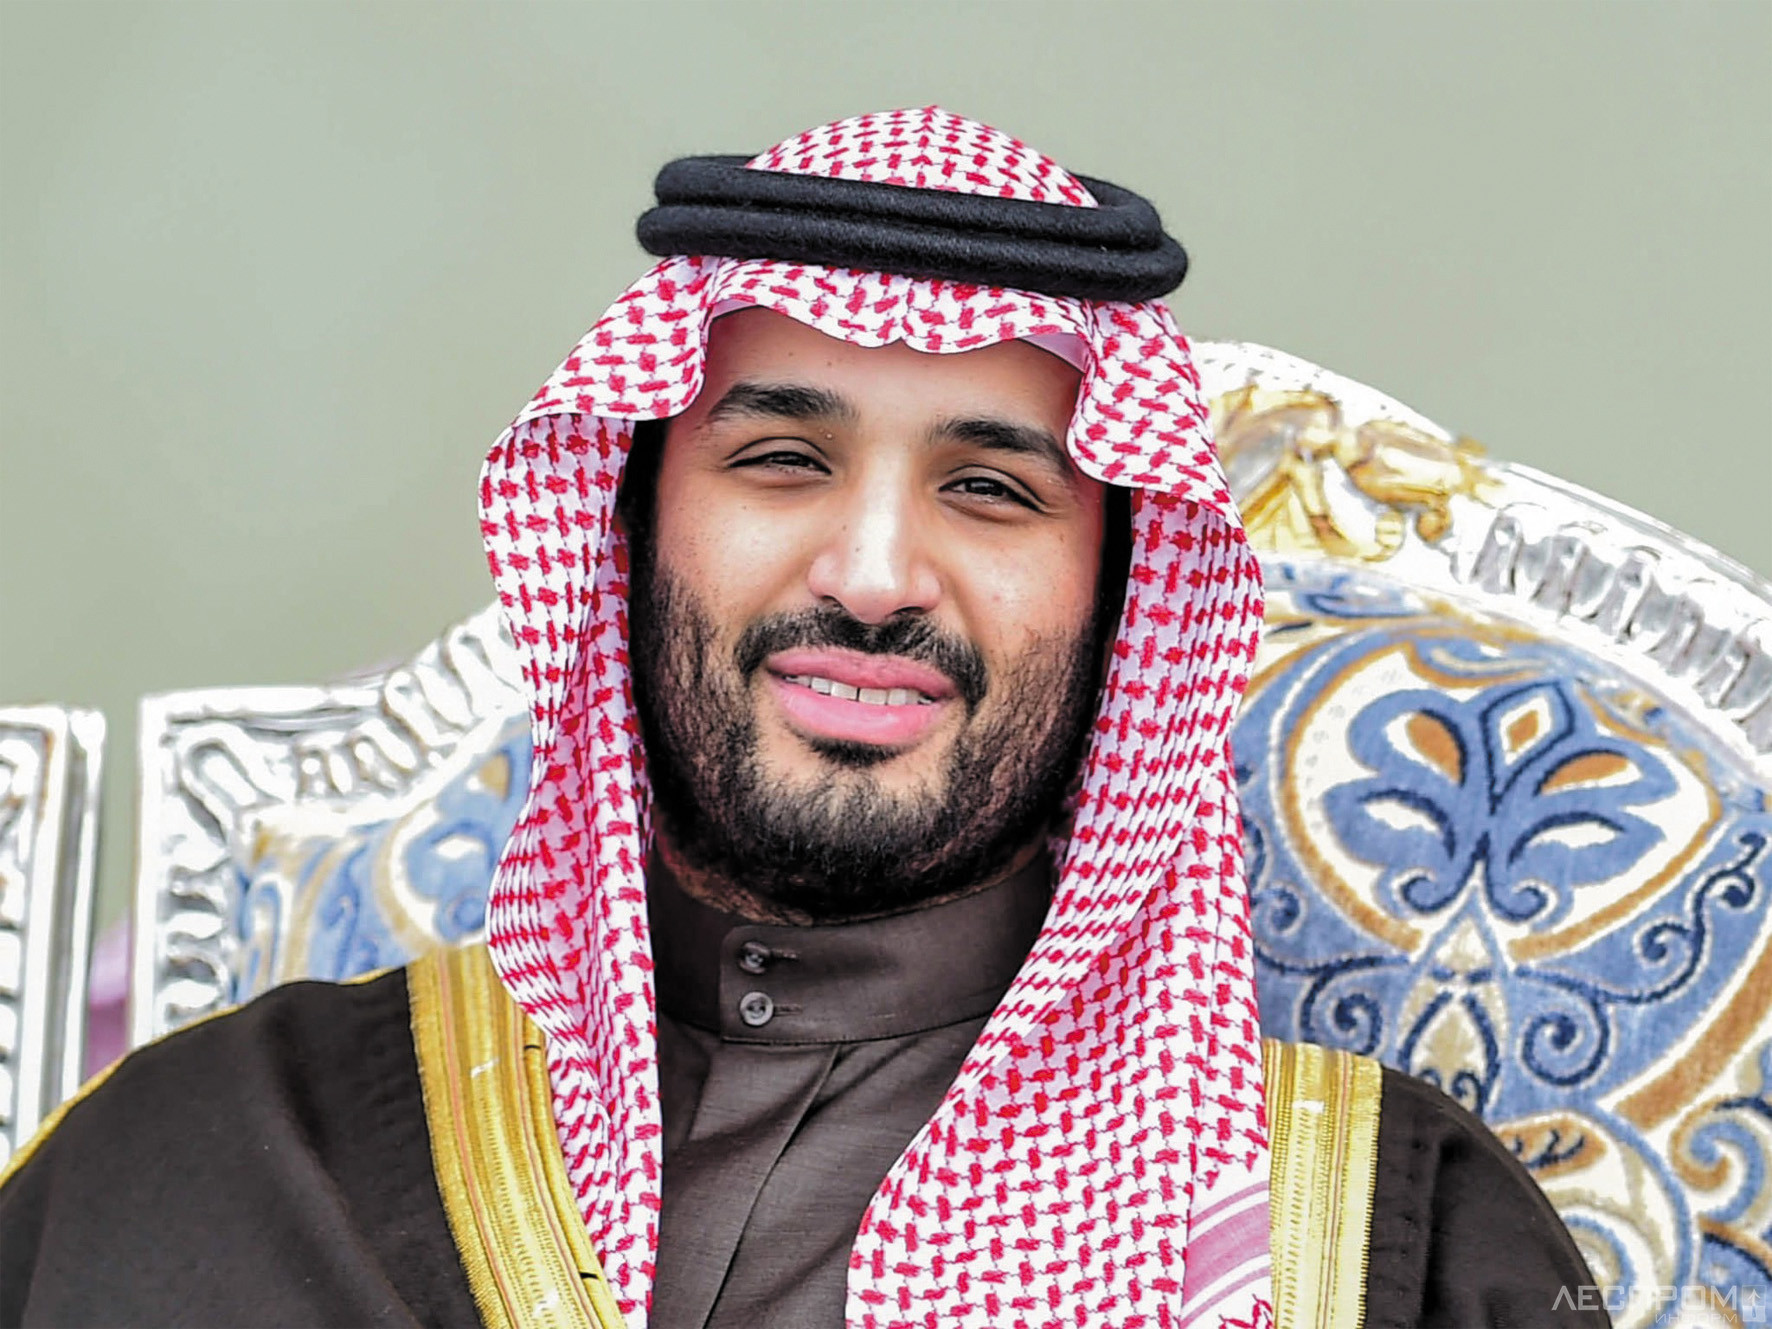 Una humillante visita del «emperador» al príncipe saudita Por Gevorg Mirzayan | RT edición en ruso